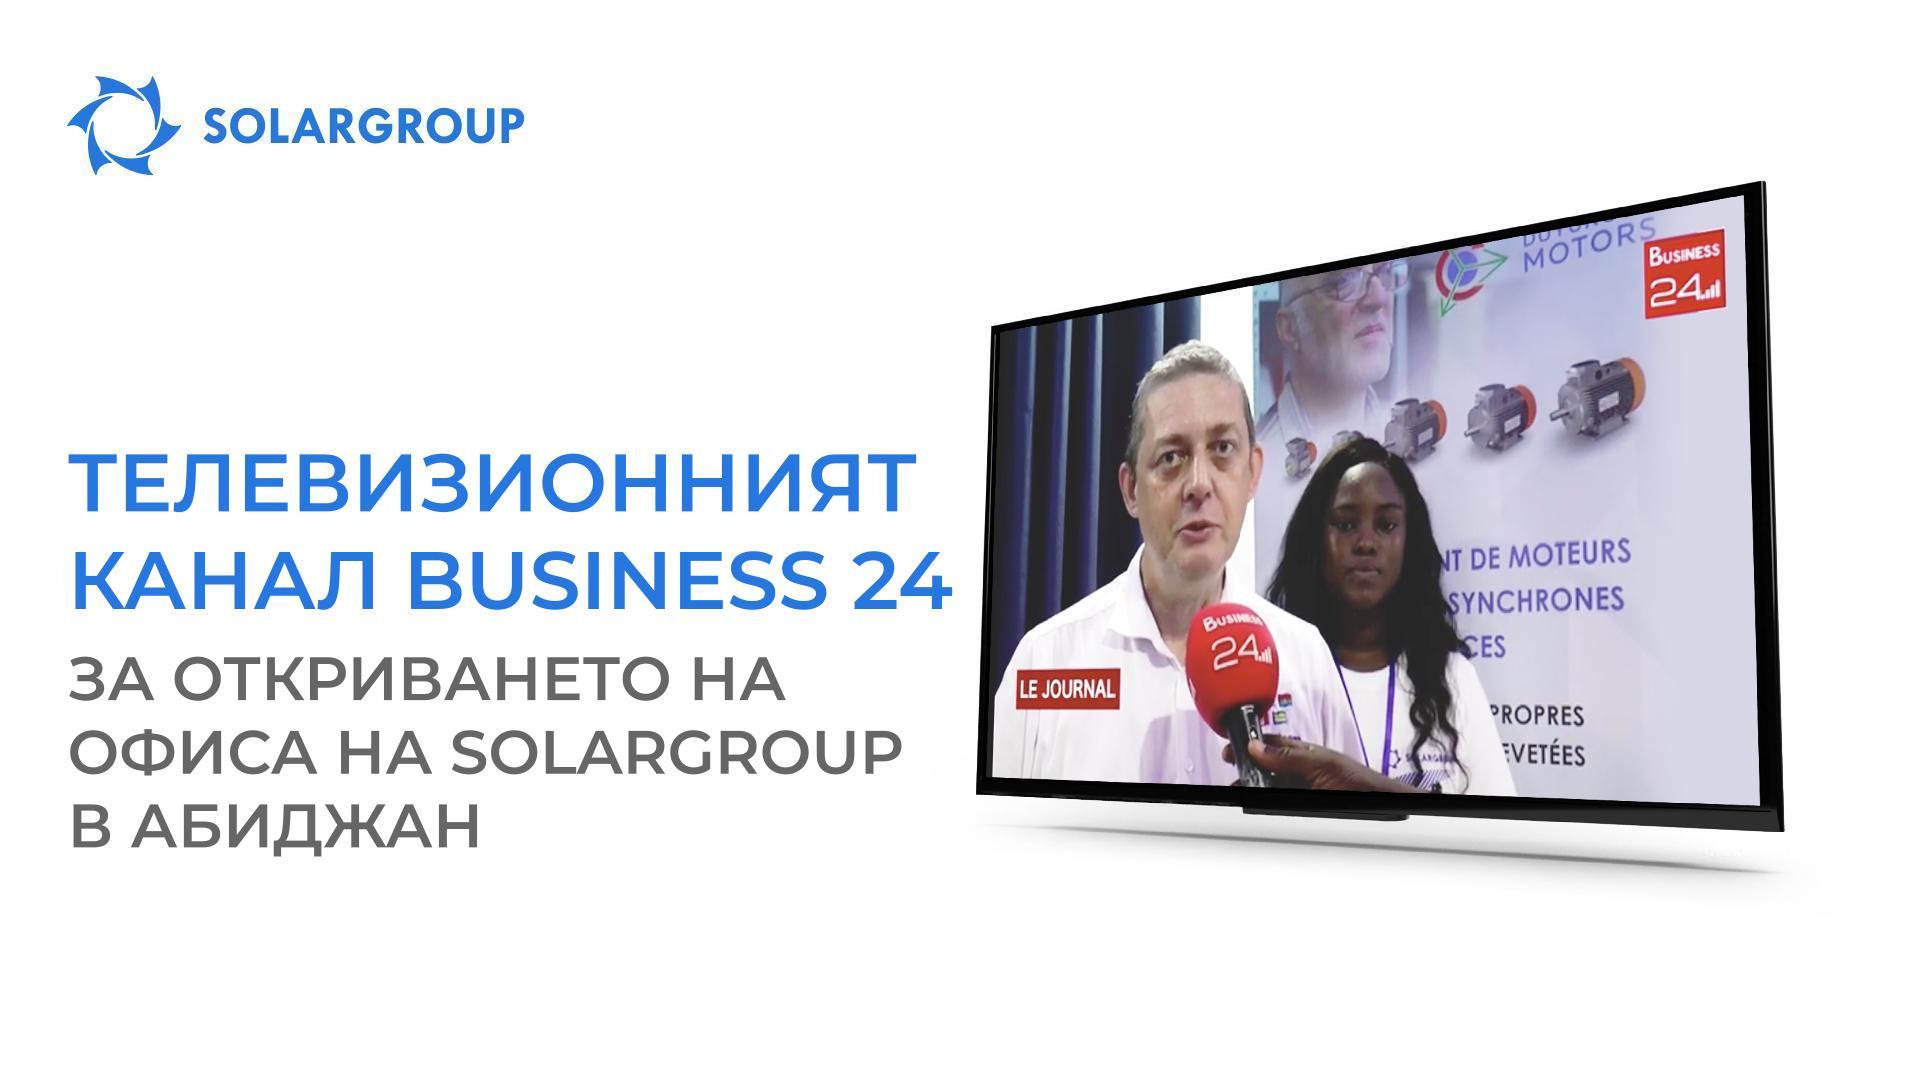 Телевизионният канал Business 24 разказа за откриването на офиса на SOLARGROUP в Абиджан